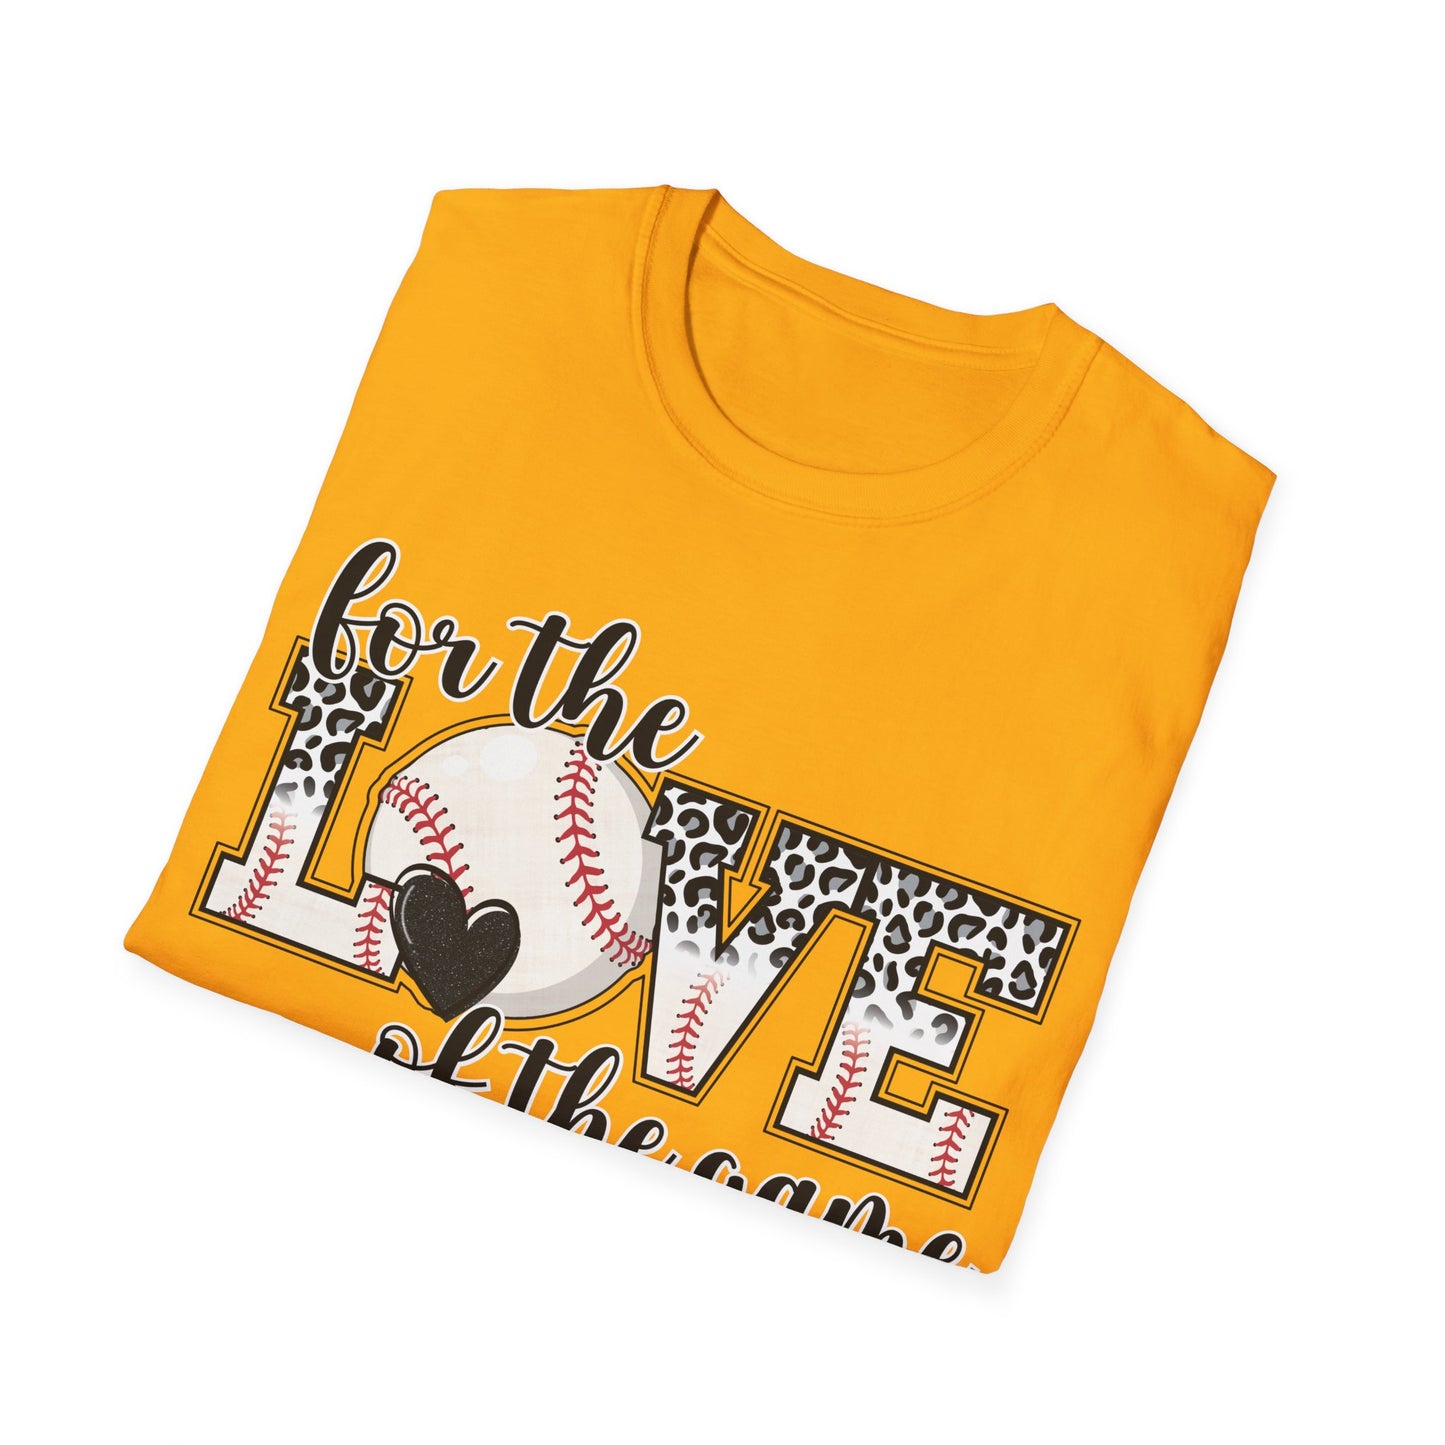 Unisex Softstyle T-Shirt - Baseball